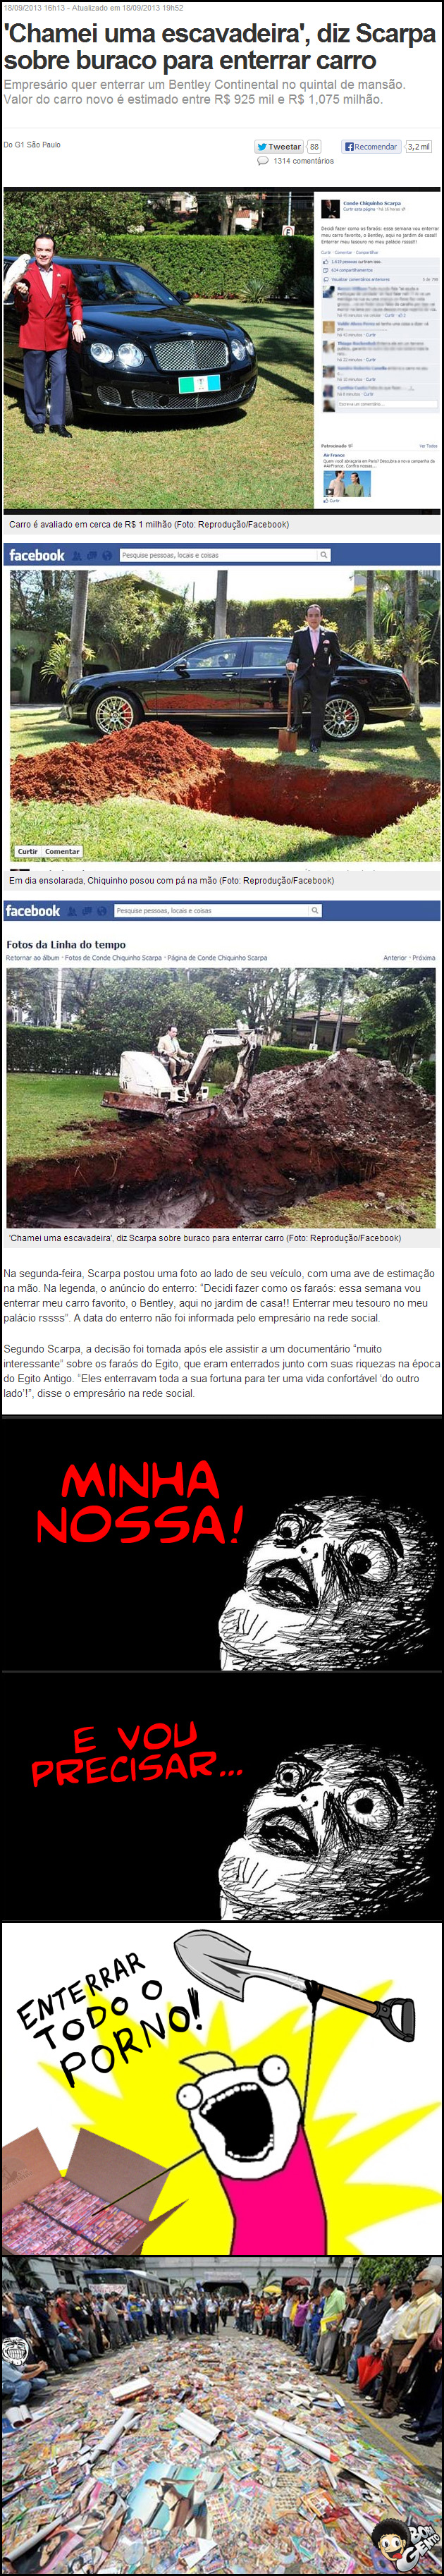 CHIQUINHO ESPARPA Chiquinho Scarpa quer enterrar carro de R$1 milhão no próprio quintal